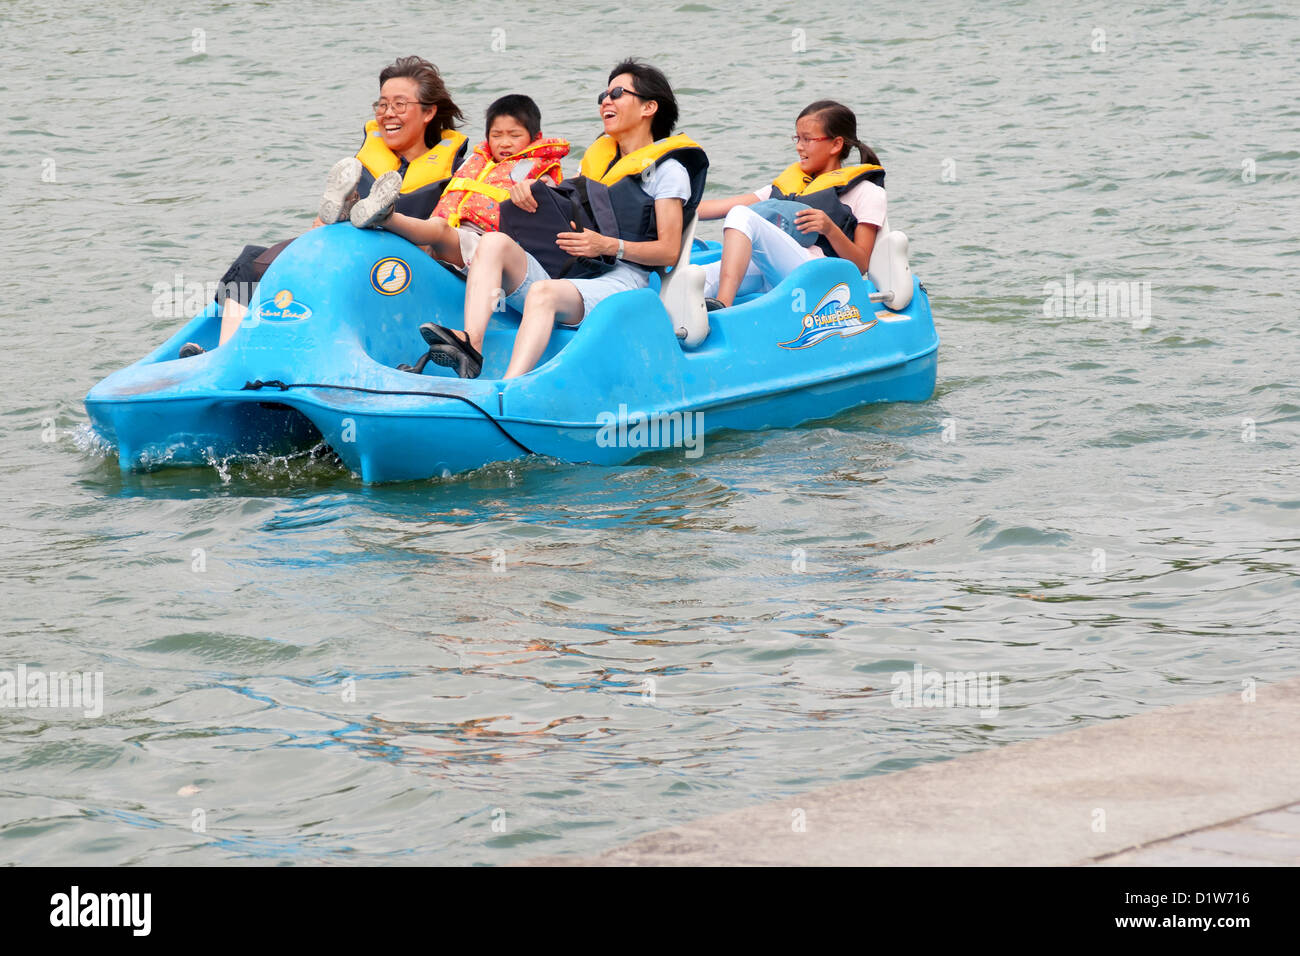 Auf dem Wasser, Paddel-Bootsfahrt von einigen Touristen, die Spaß an einem kalten Tag Flickschusterei Stockfoto